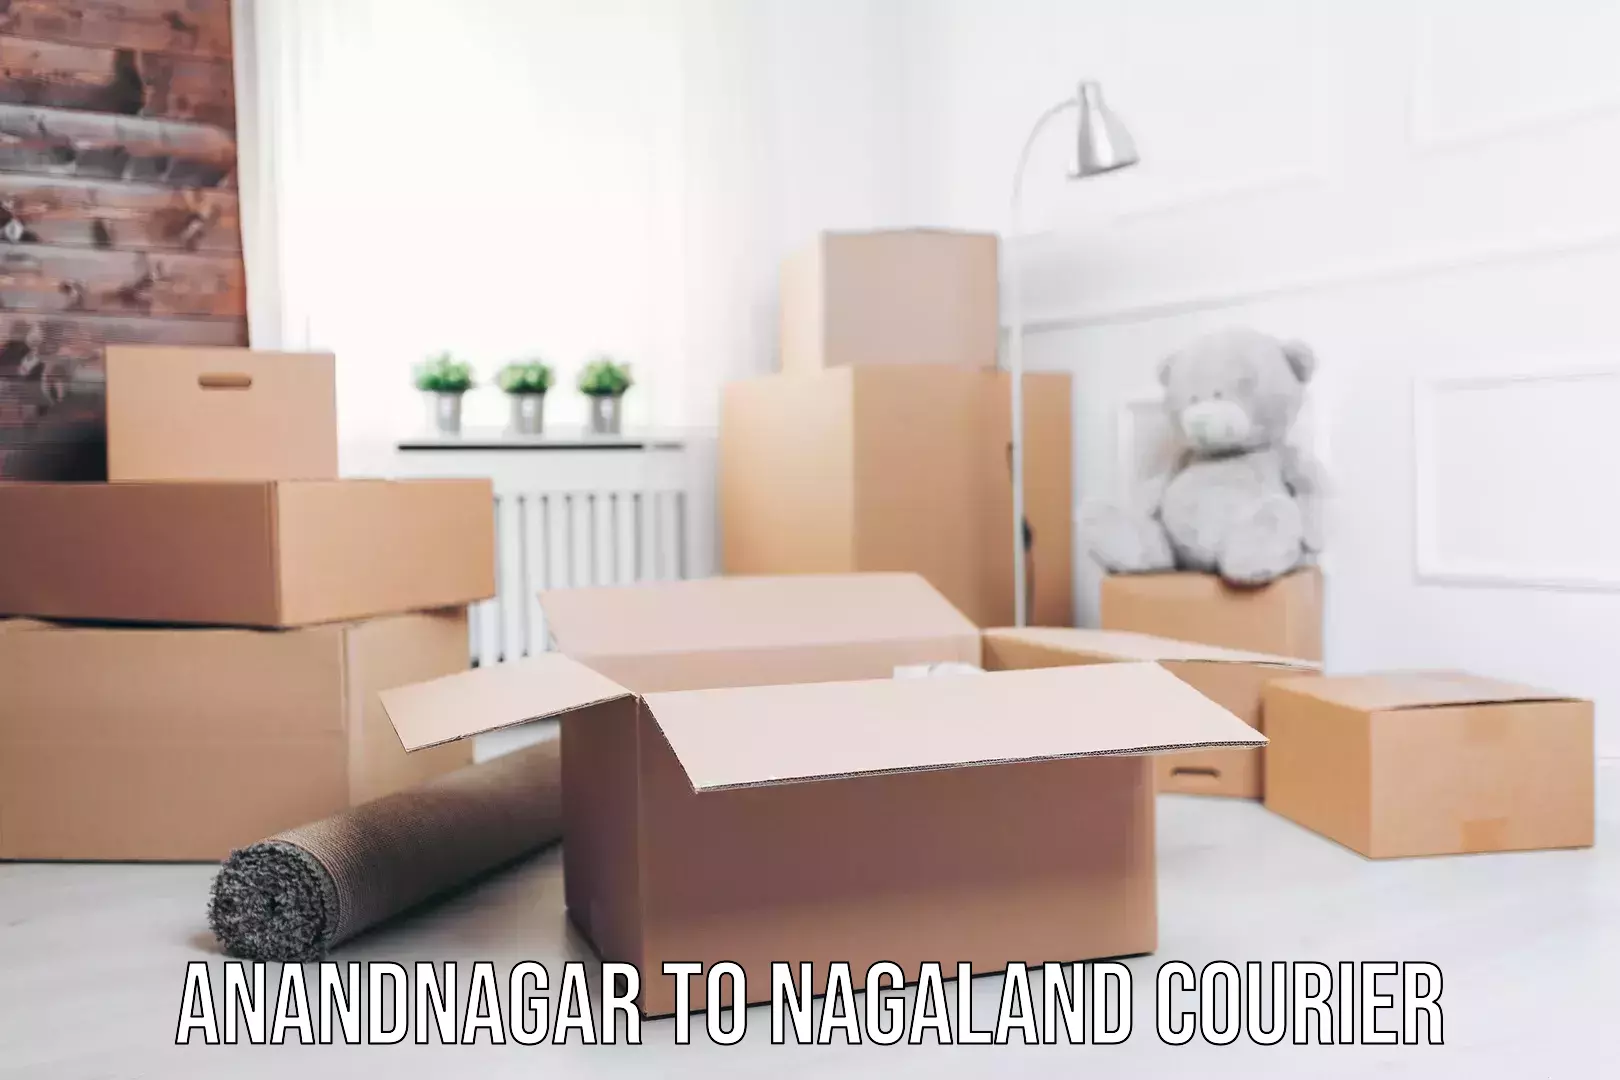 Express package handling Anandnagar to Nagaland